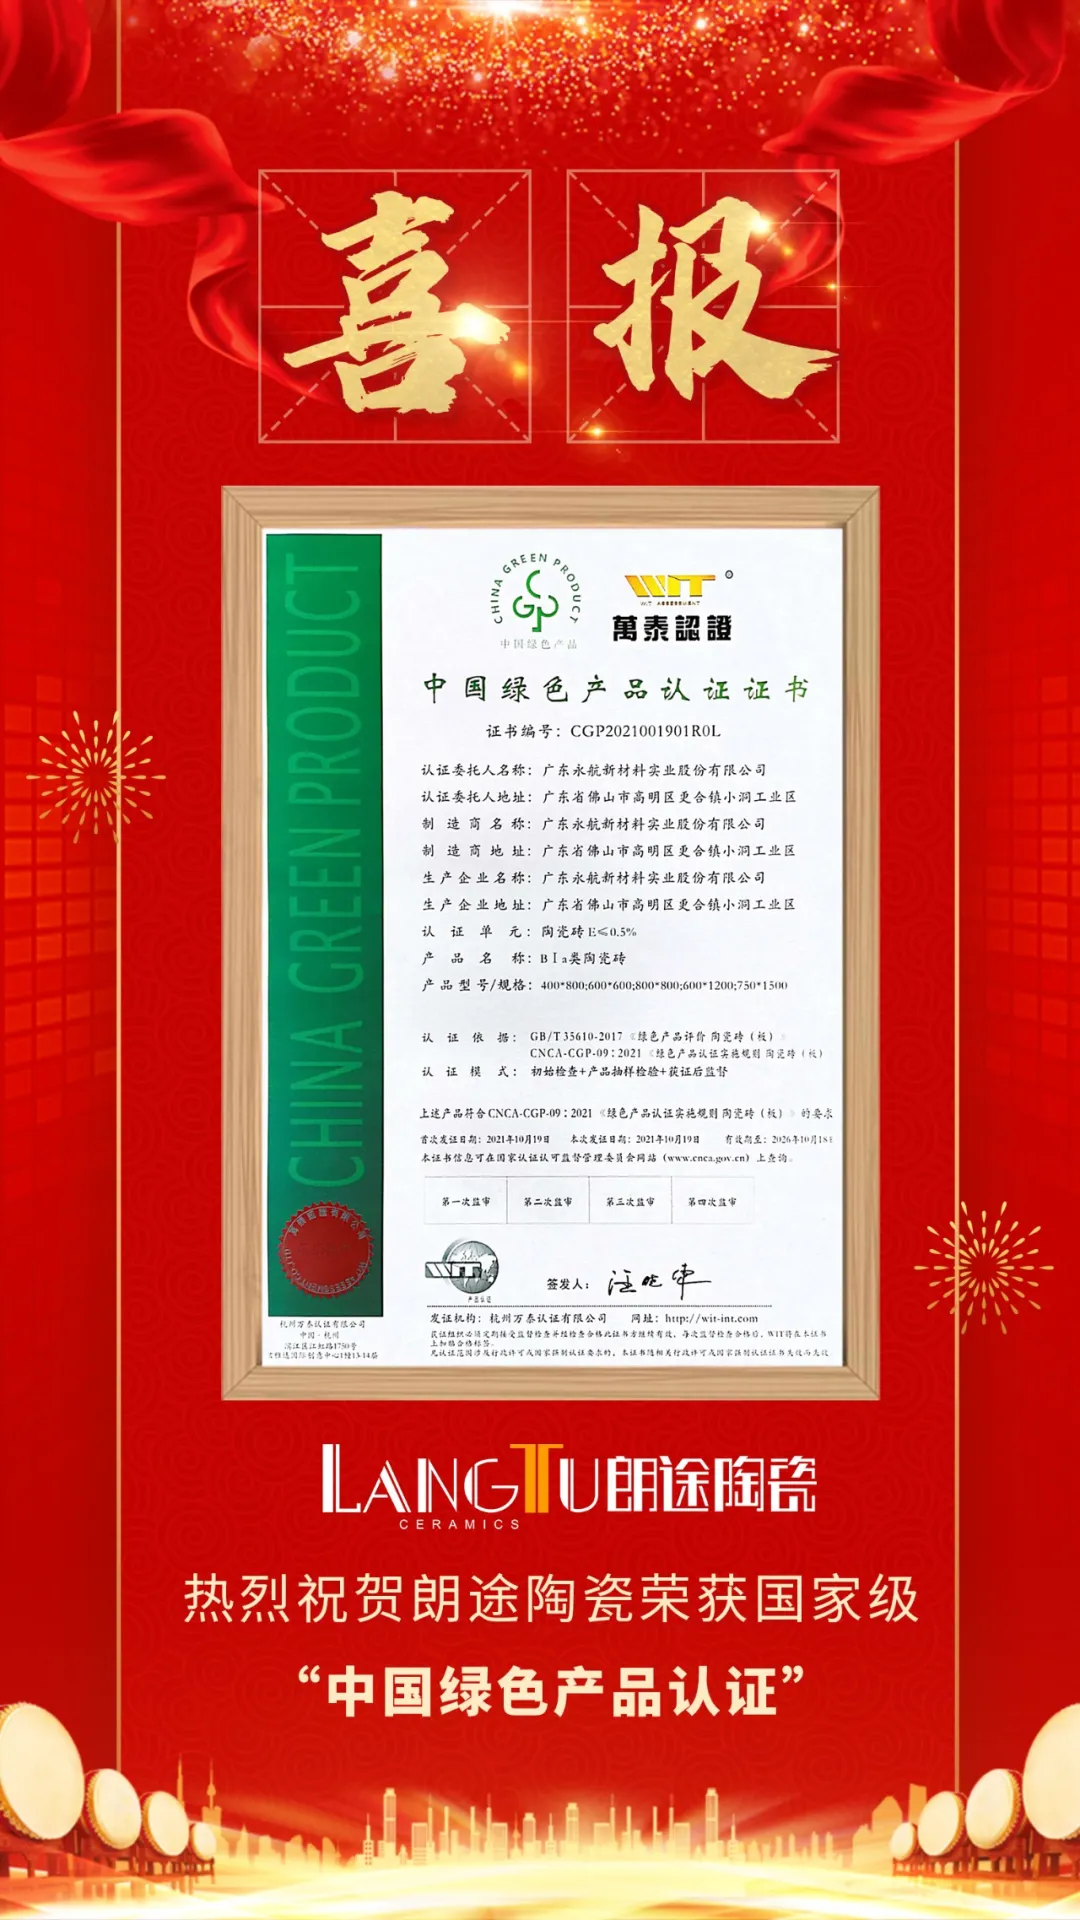 重磅NEWS | 热烈祝贺朗途陶瓷荣获国家级“中国绿色产品认证”